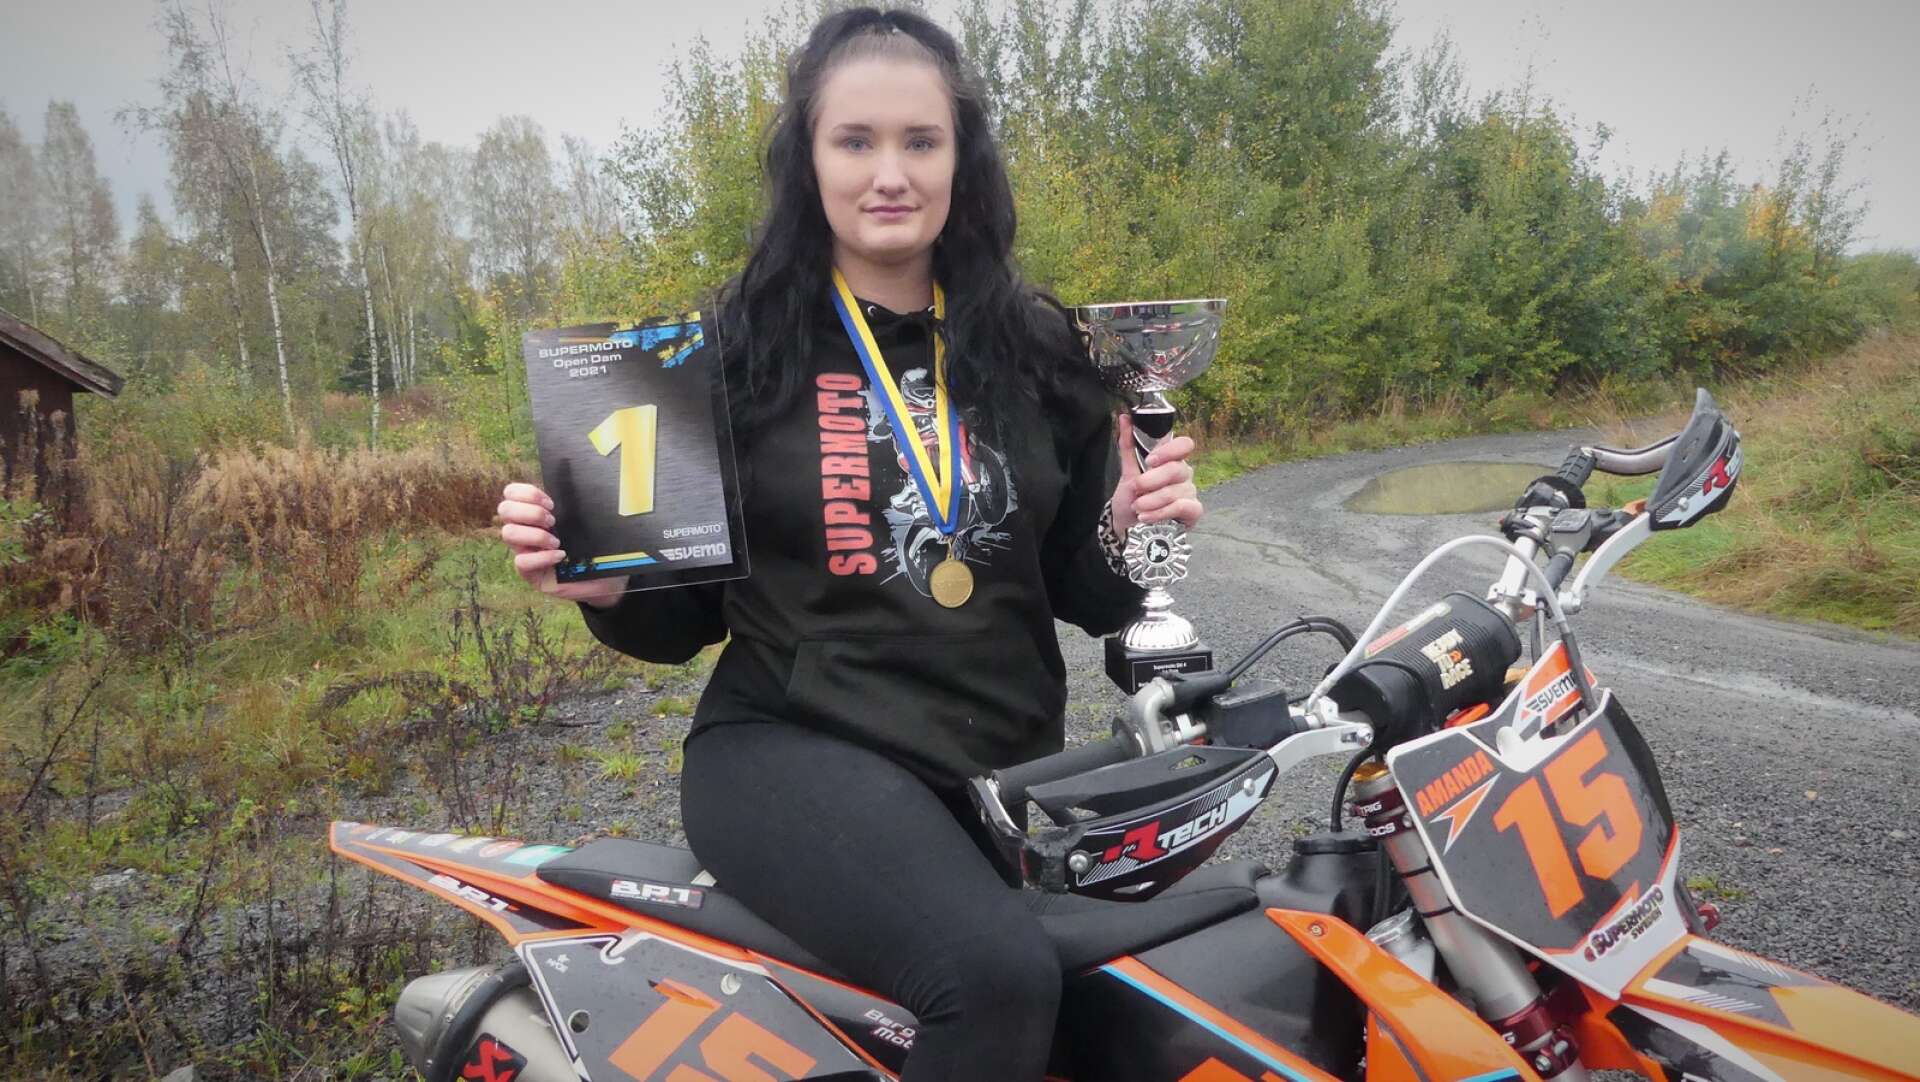 19-åriga Amanda Carlsson från Säffle med medaljer, pokal och diplom sedan hon vunnit damklassen i SM i Supermoto och utmanat killarna i herrklassen. 